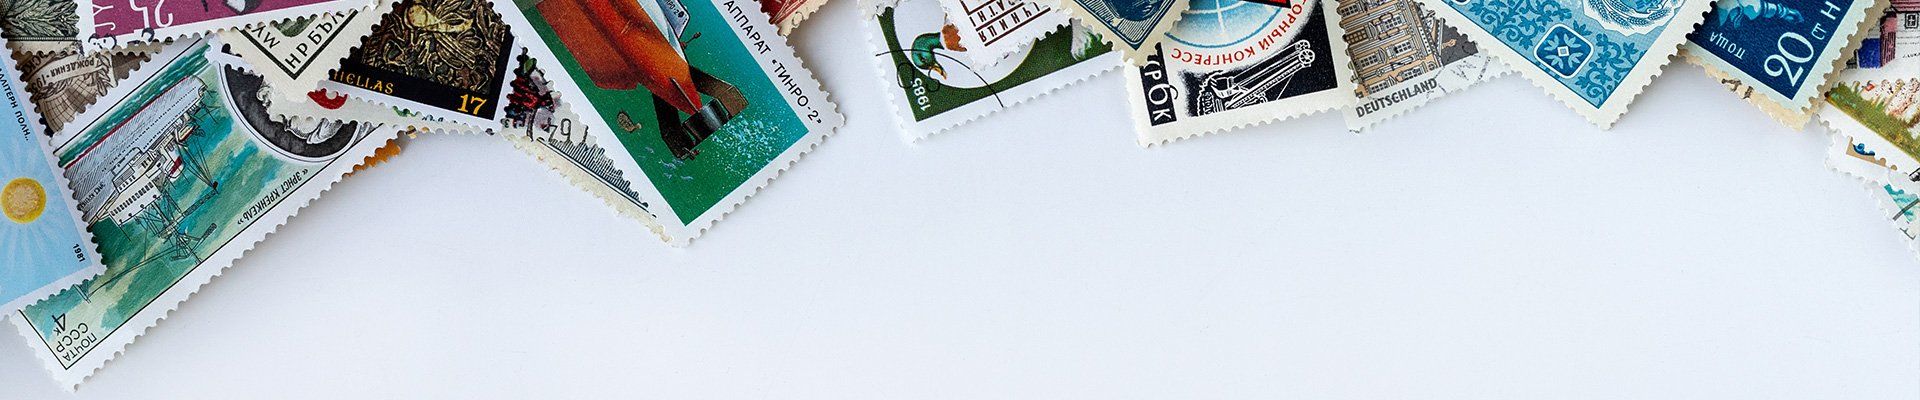 Jolis timbres entreposés sur un fond blanc